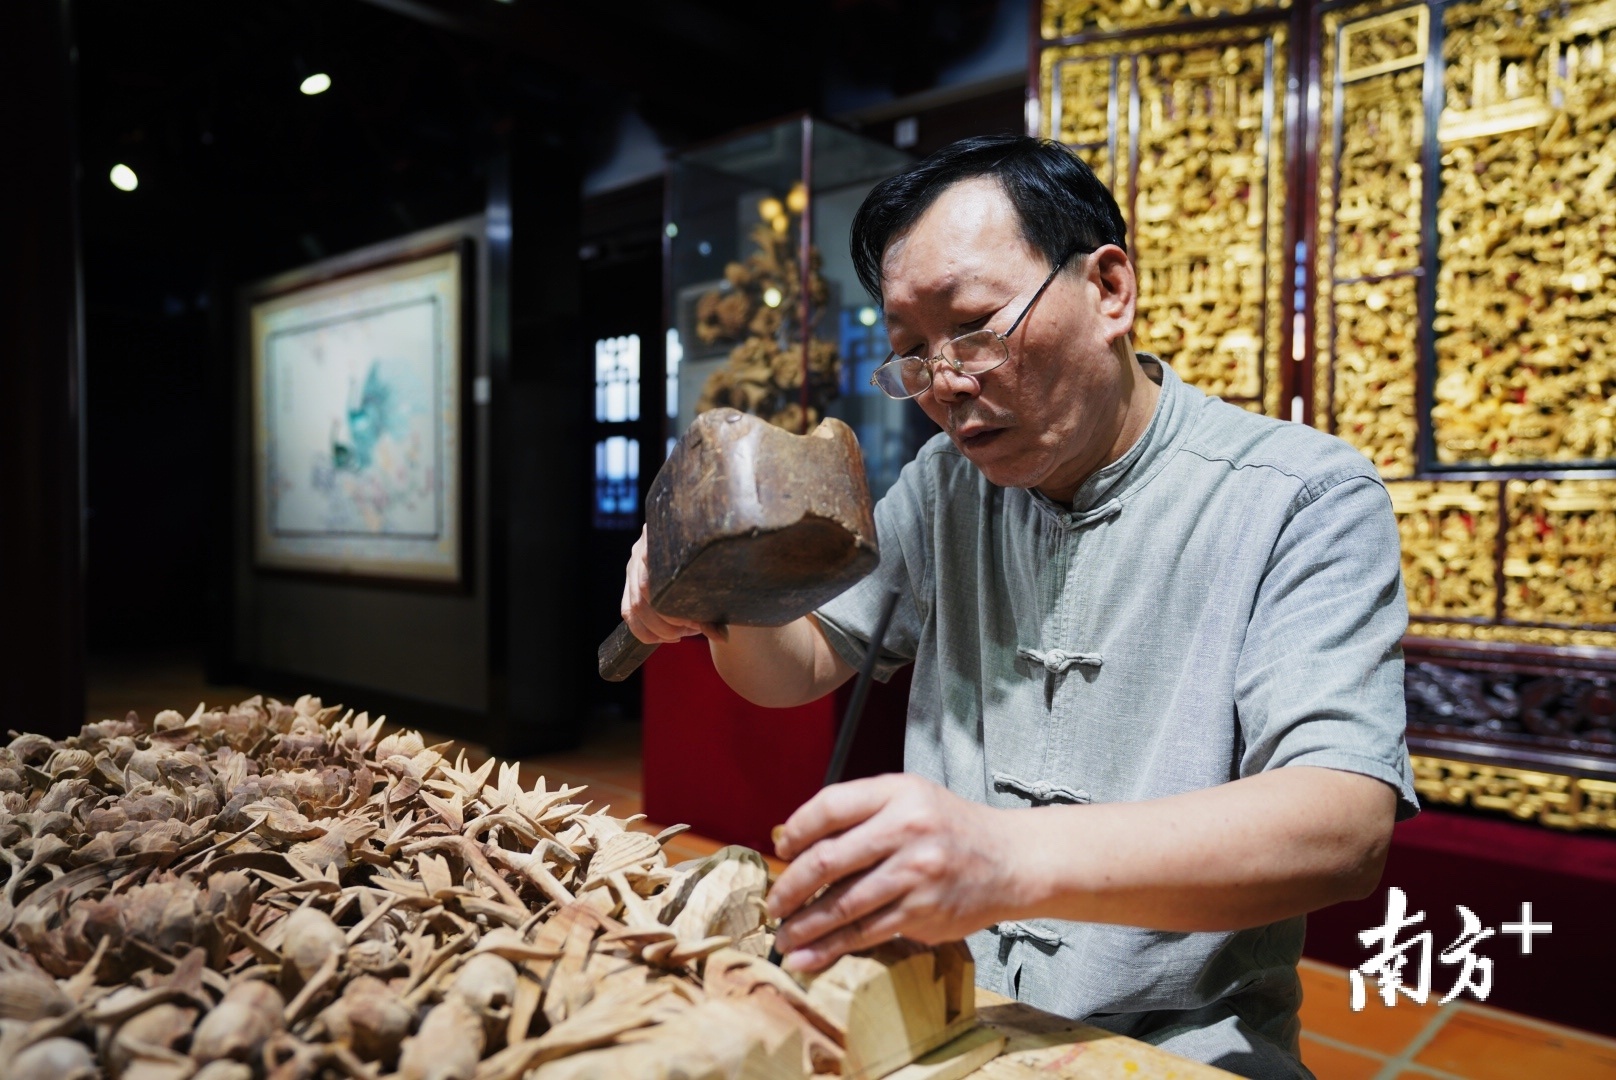 国家级非遗项目传承人金子松在展演木雕。